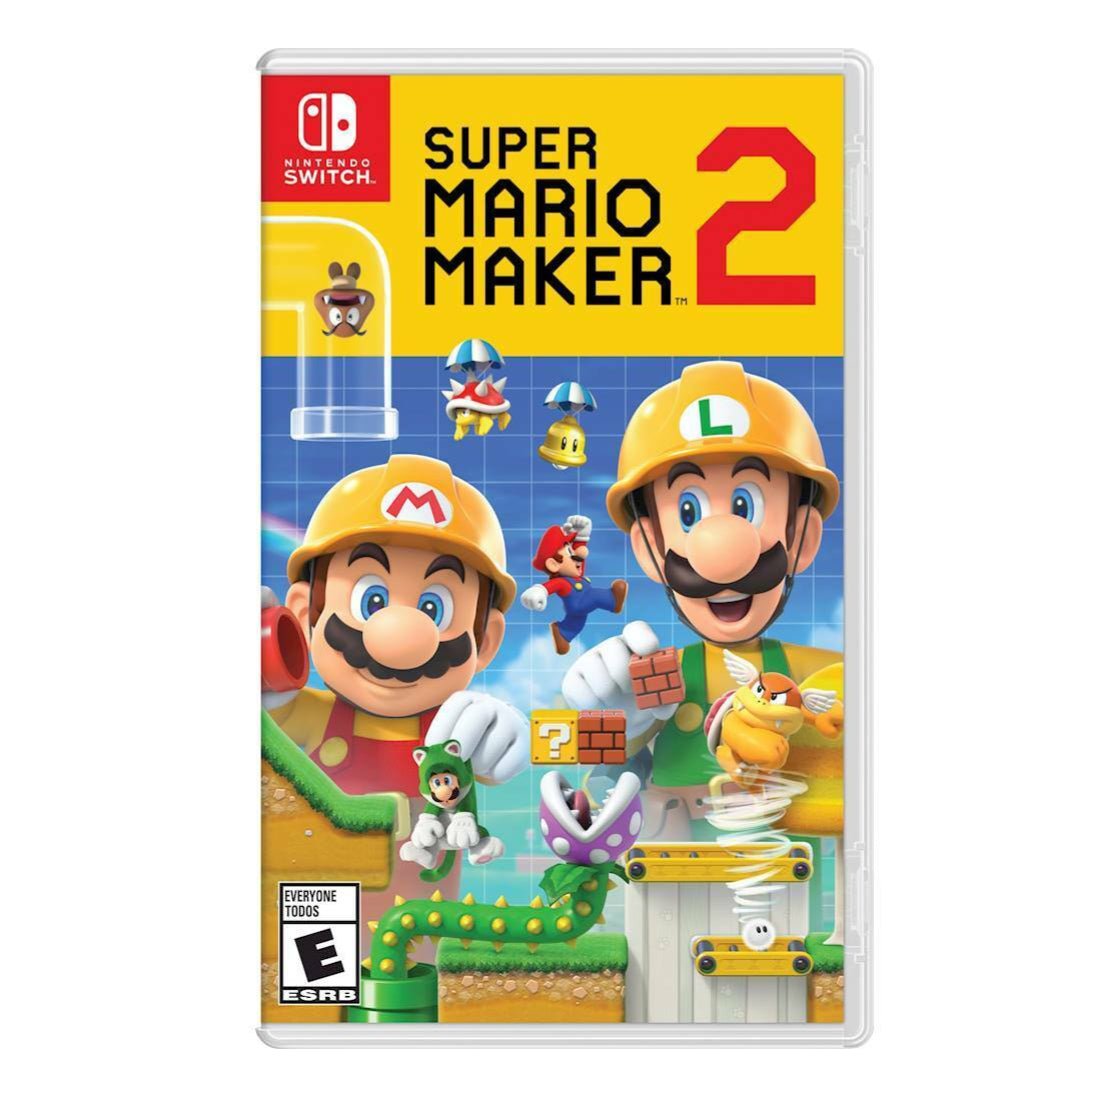 Super Mario Maker 2 para Nintendo Switch